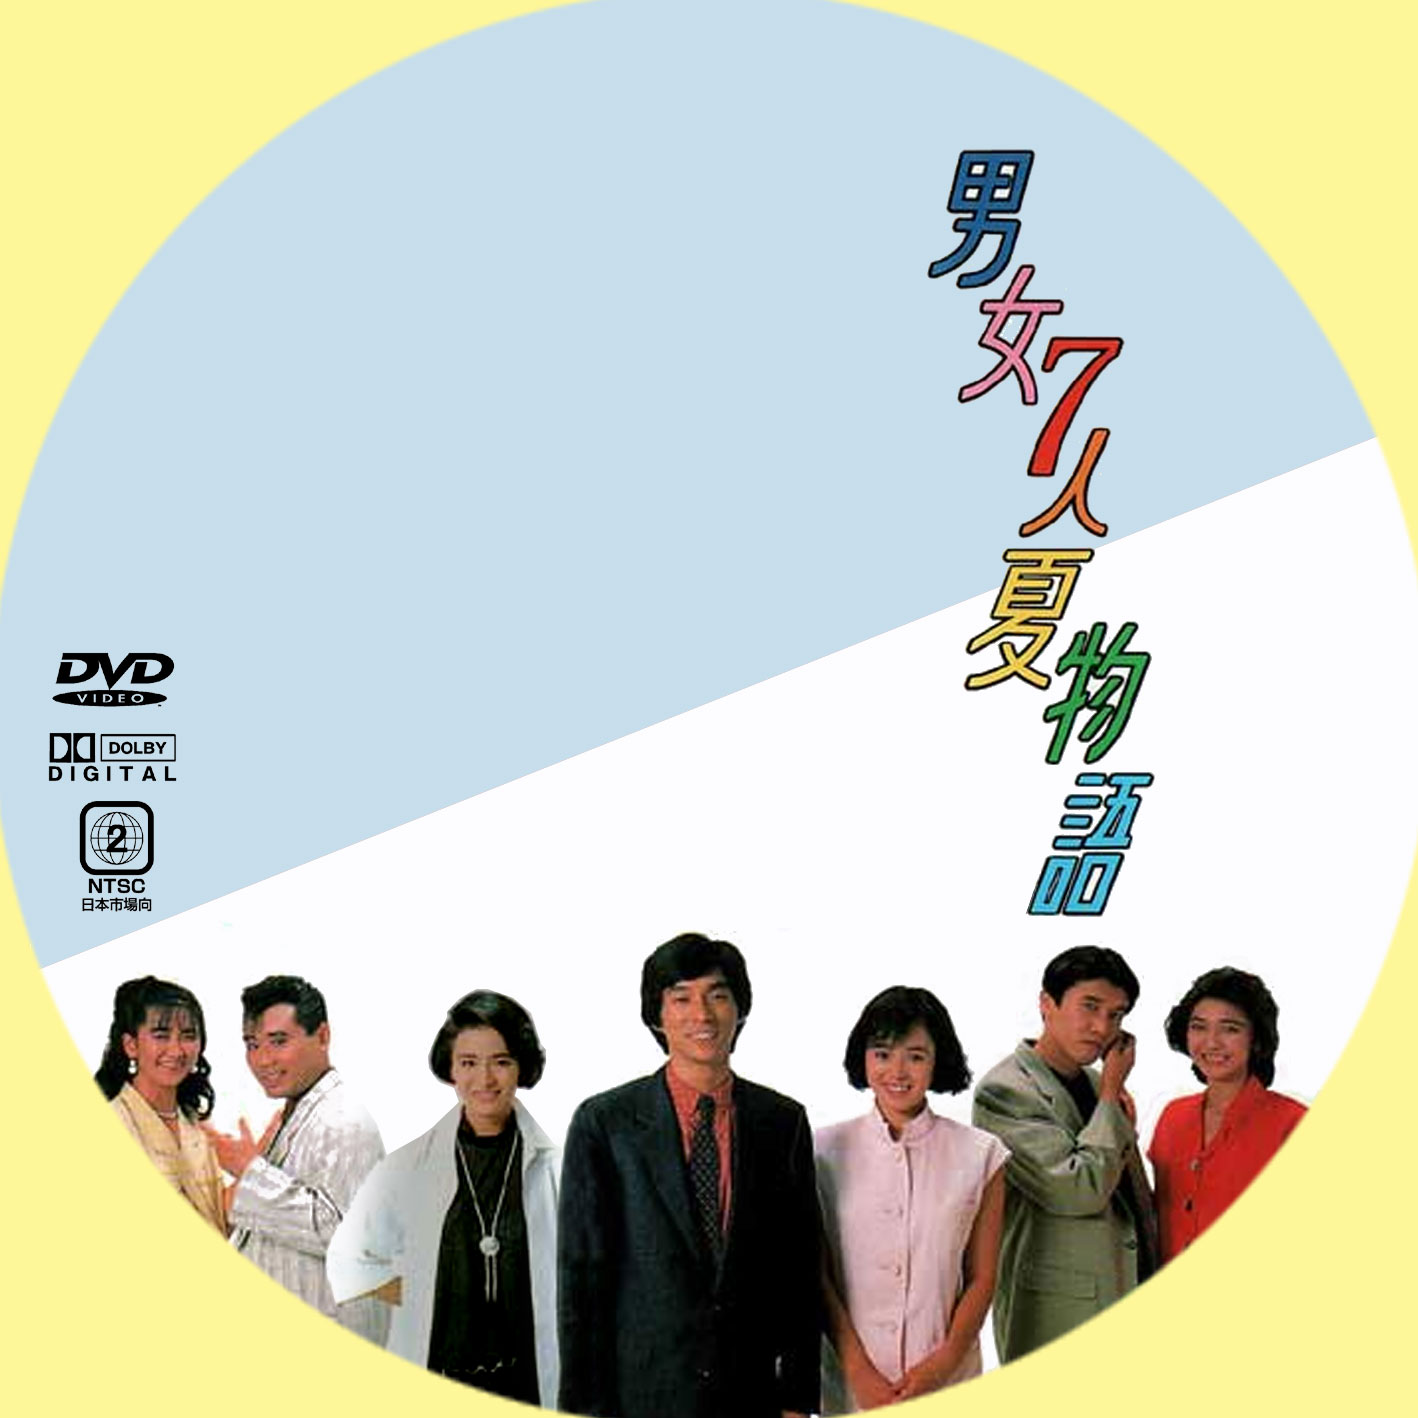 男女7人夏物語、秋物語 DVD-BOX〈各4枚組〉 shimizu-kazumichi.com